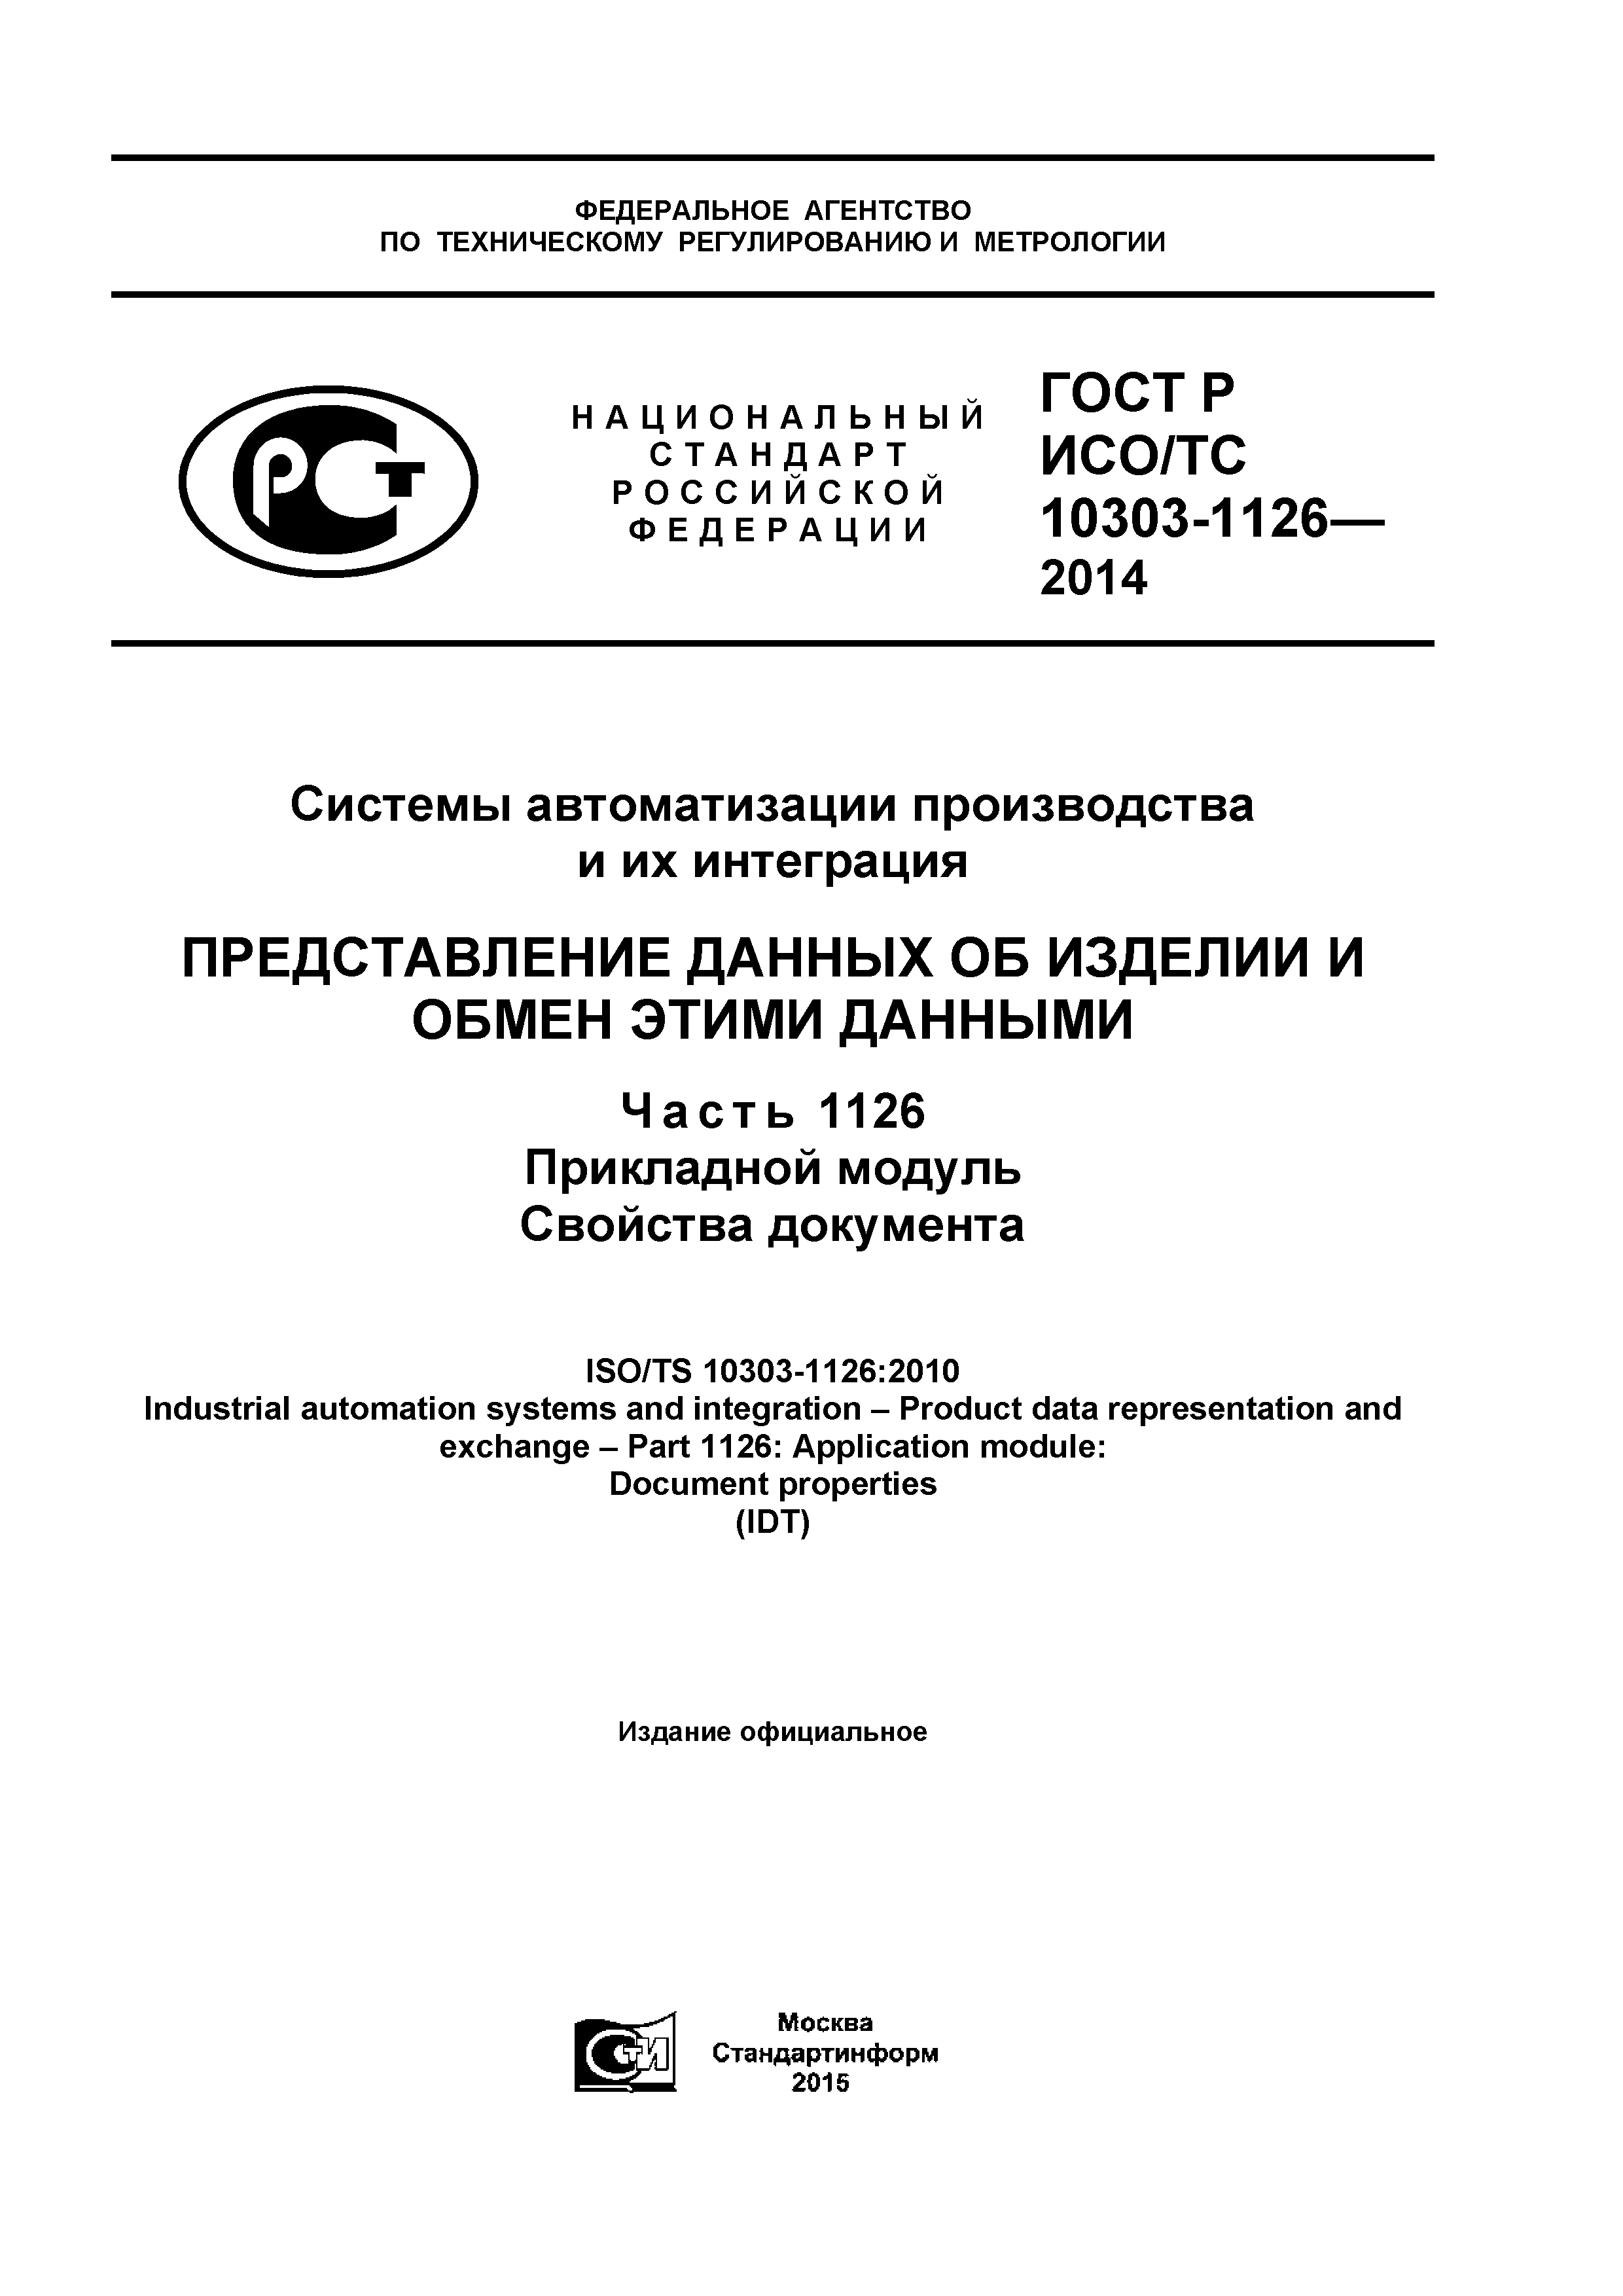 ГОСТ Р ИСО/ТС 10303-1126-2014